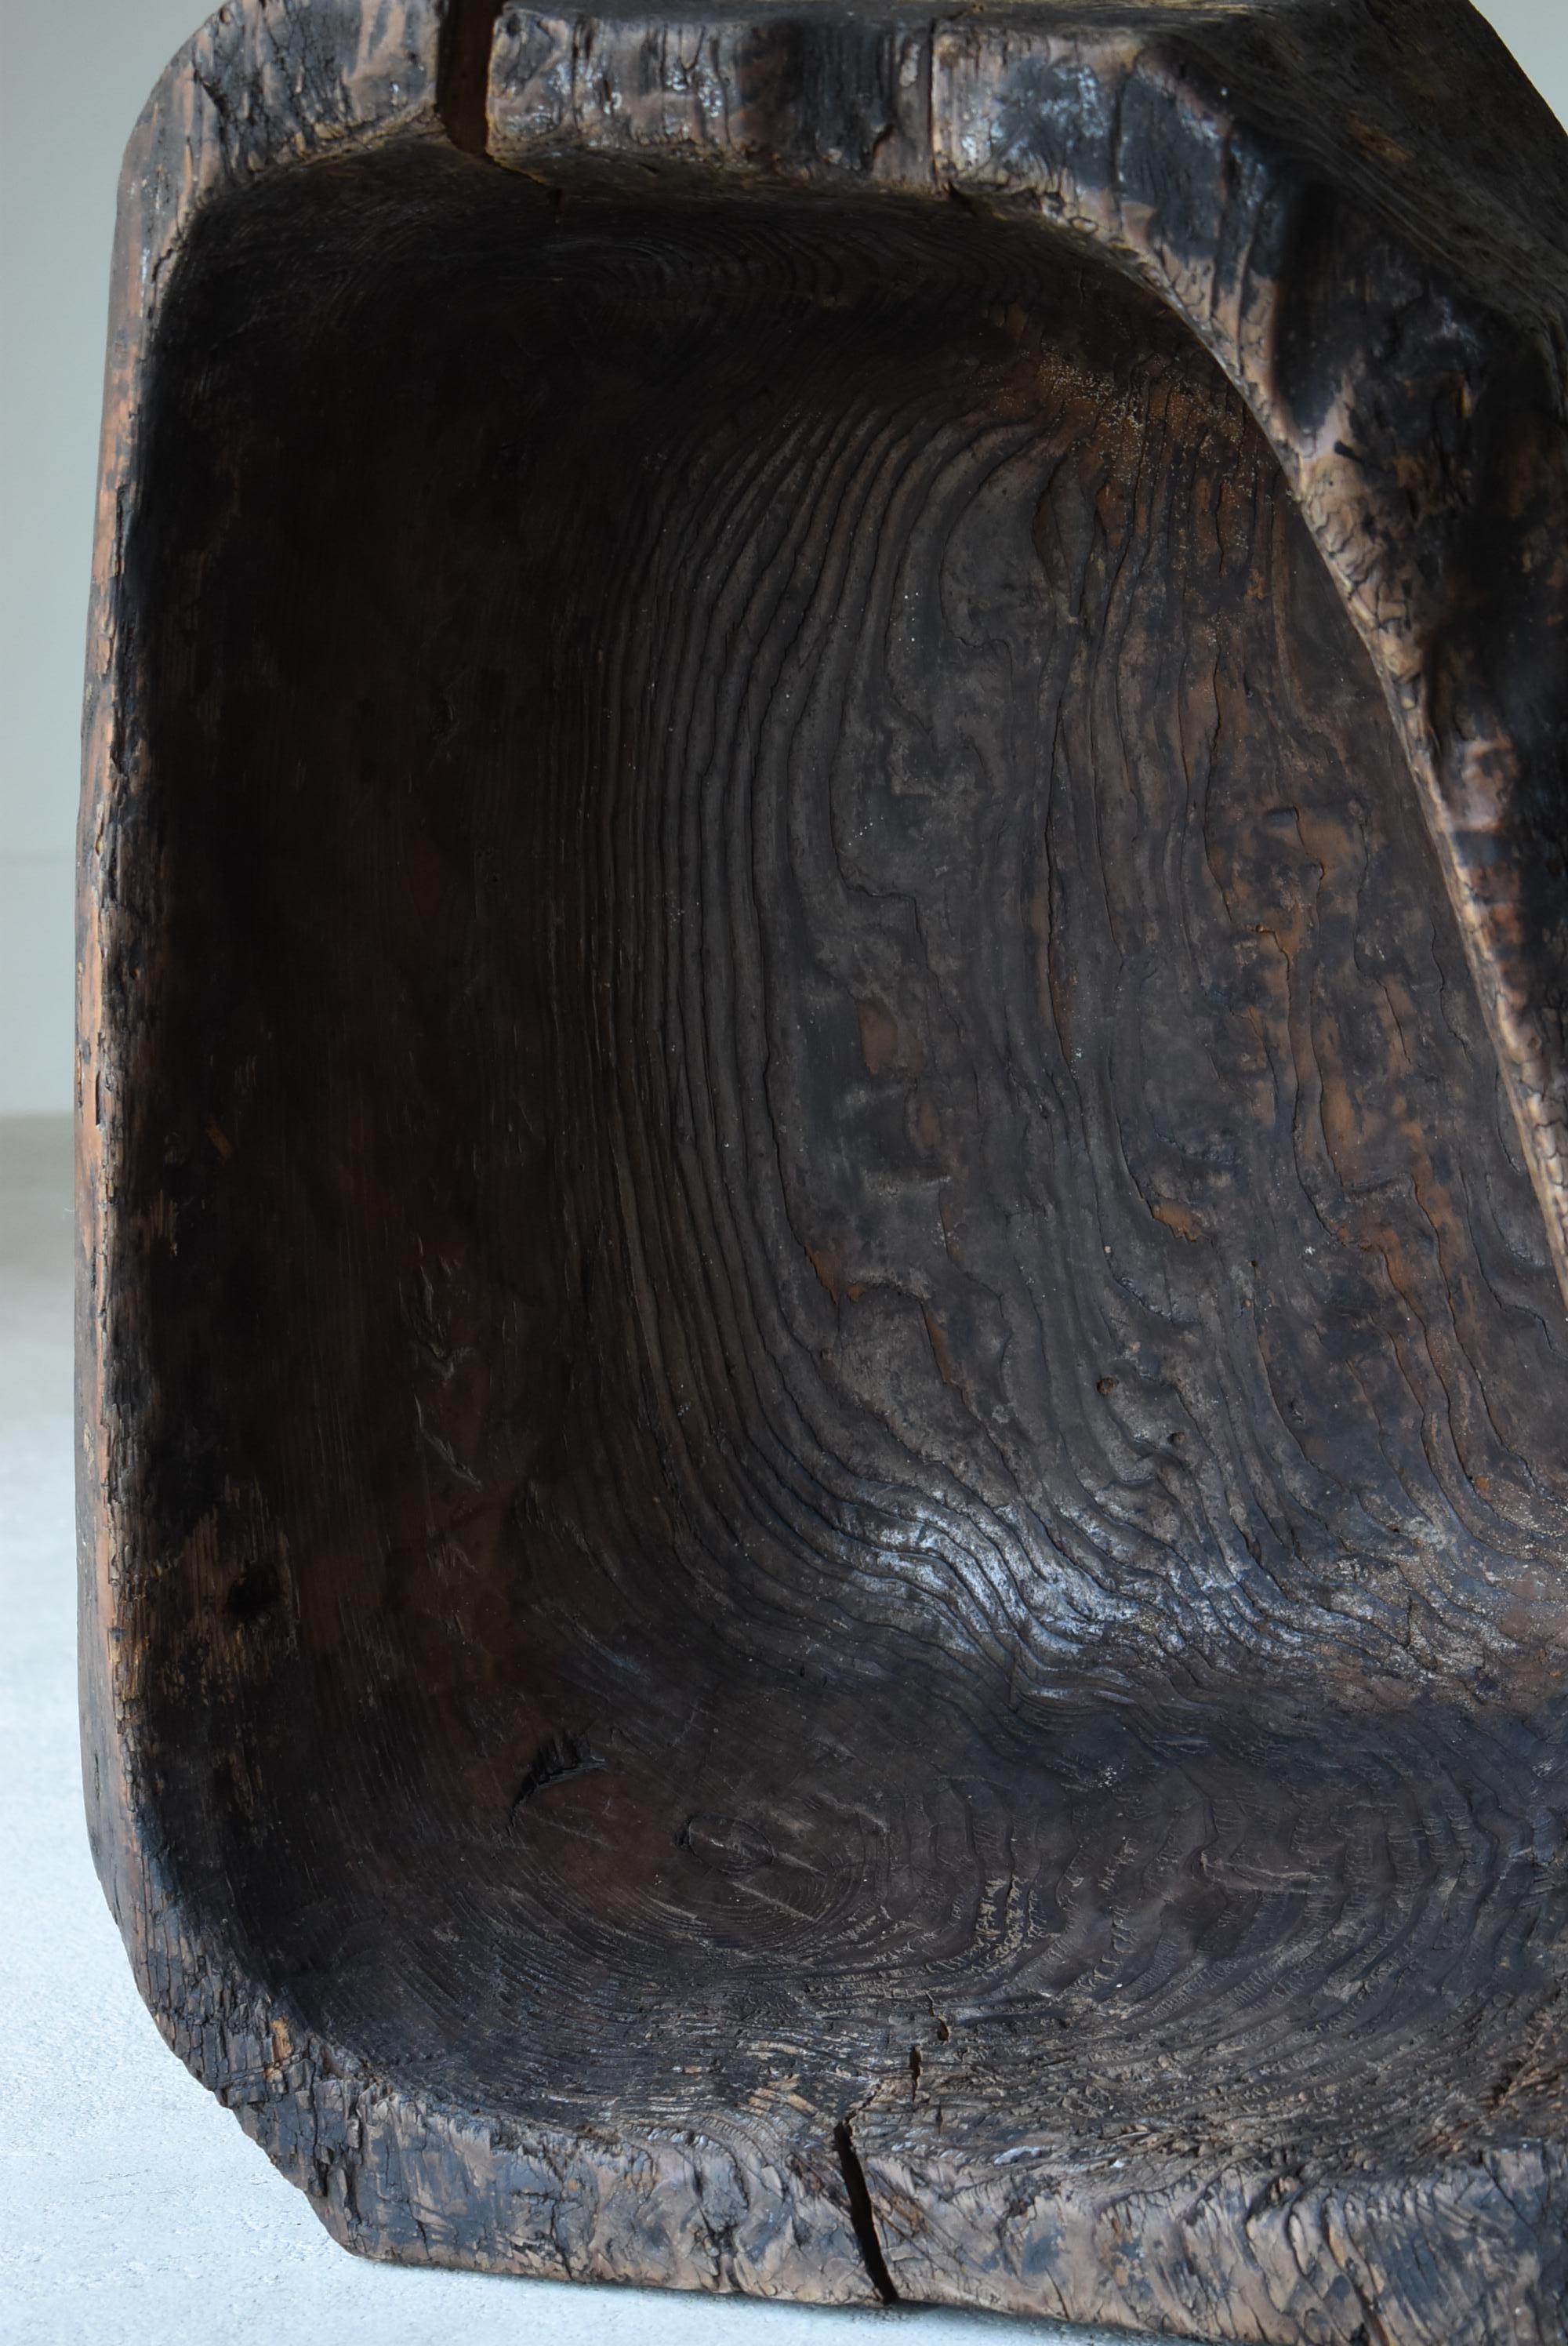 Japanese Antique Primitive Wooden Bowl 1860s-1900s / Wabi Sabi Object Mingei 5